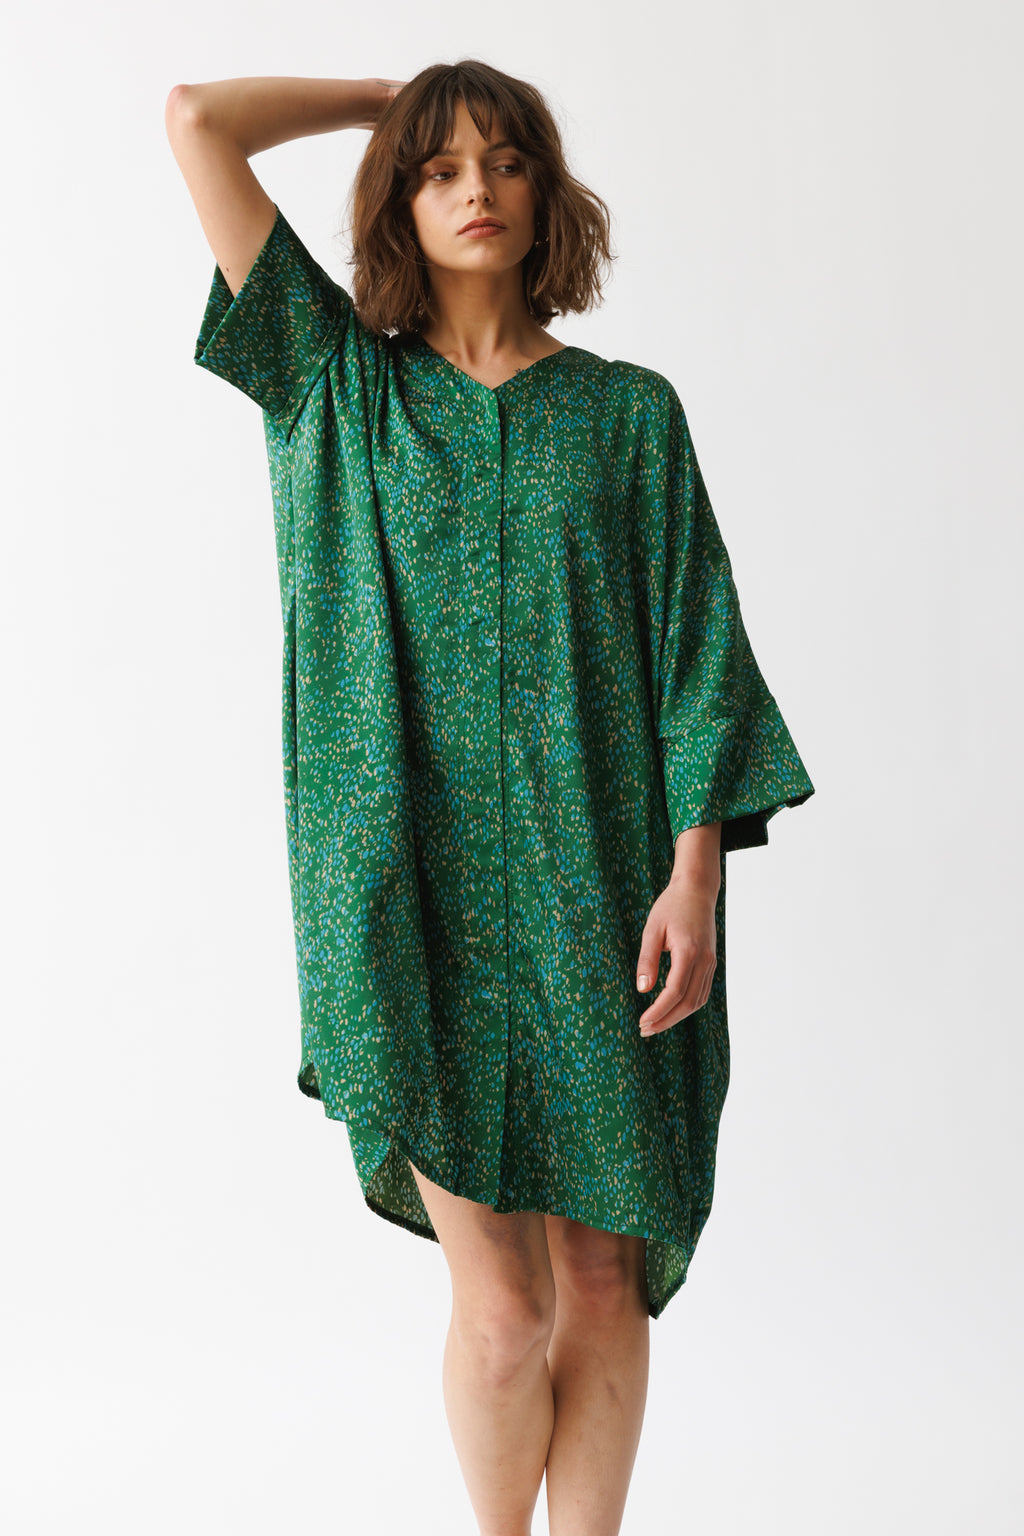 שמלת היקארו הדפס ירוק